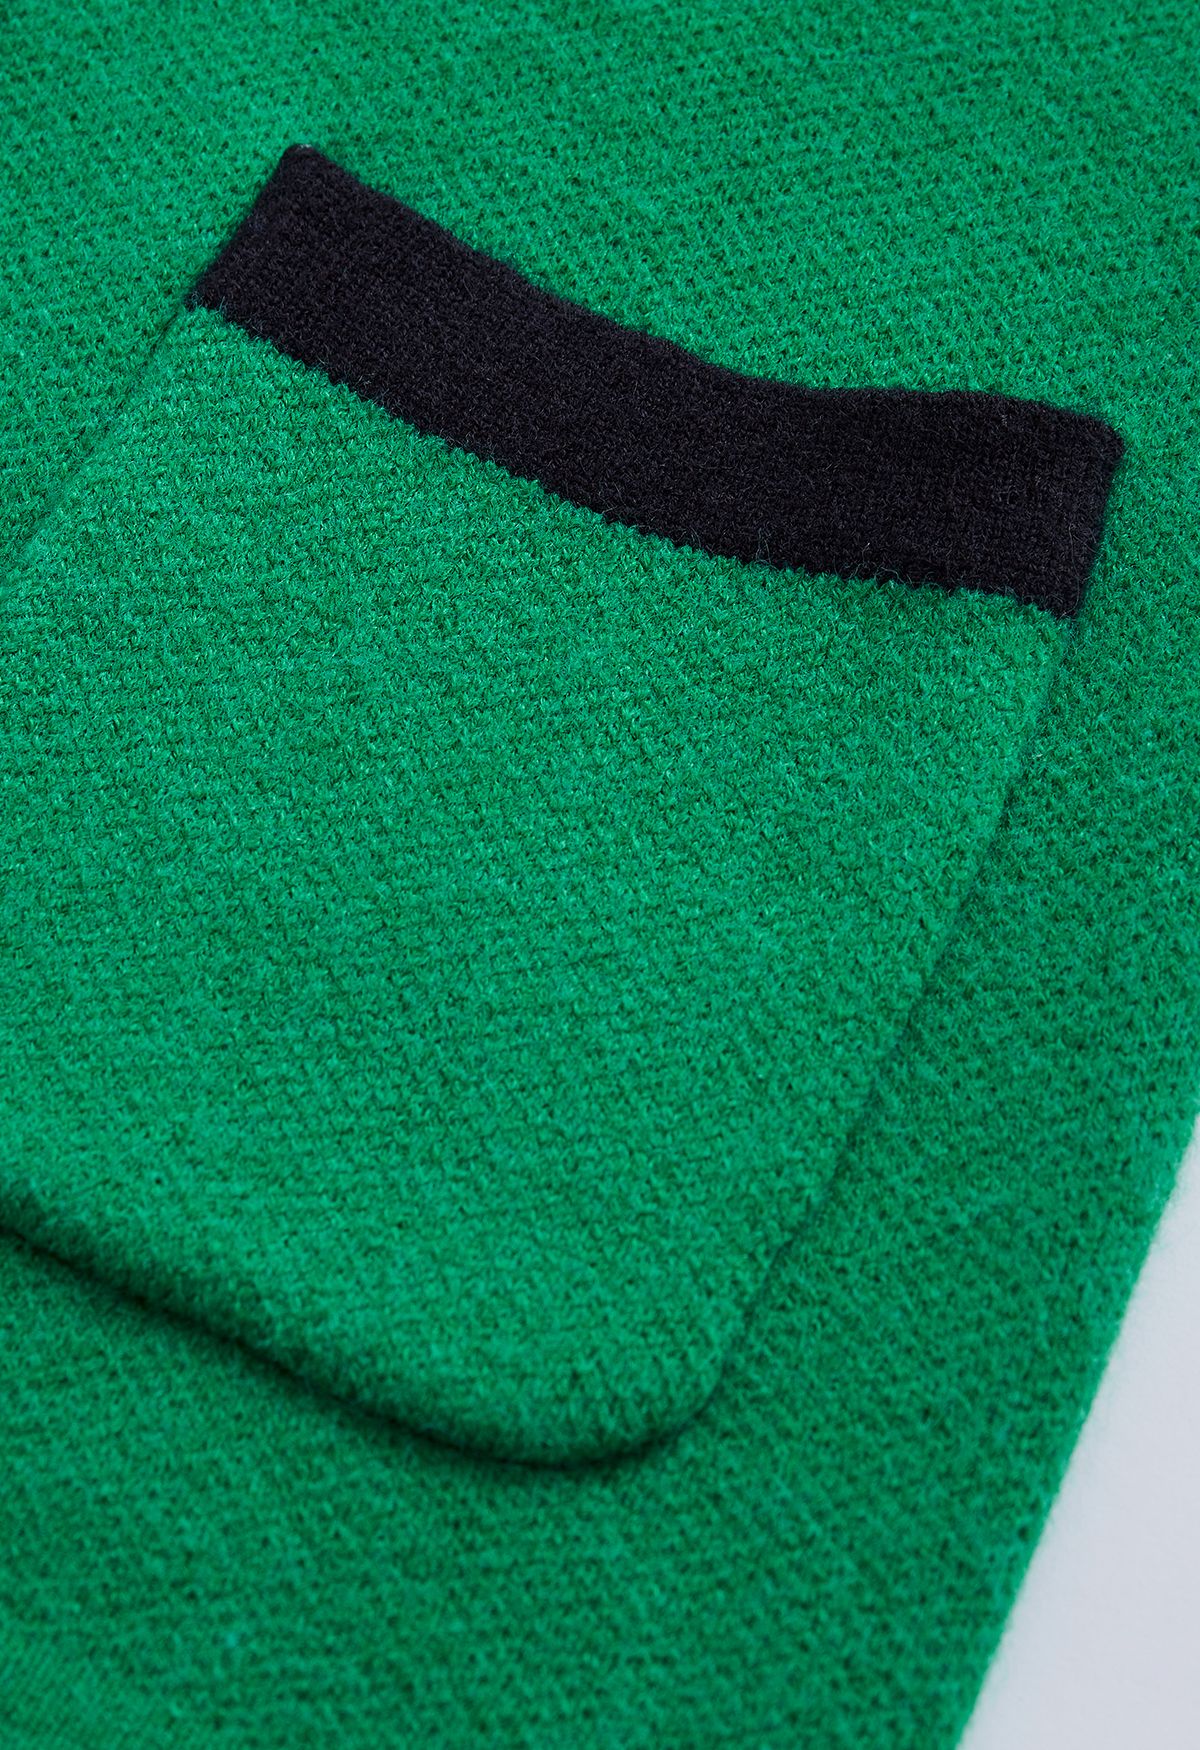 كارديجان مزدوج الصدر بلون متباين باللون الأخضر